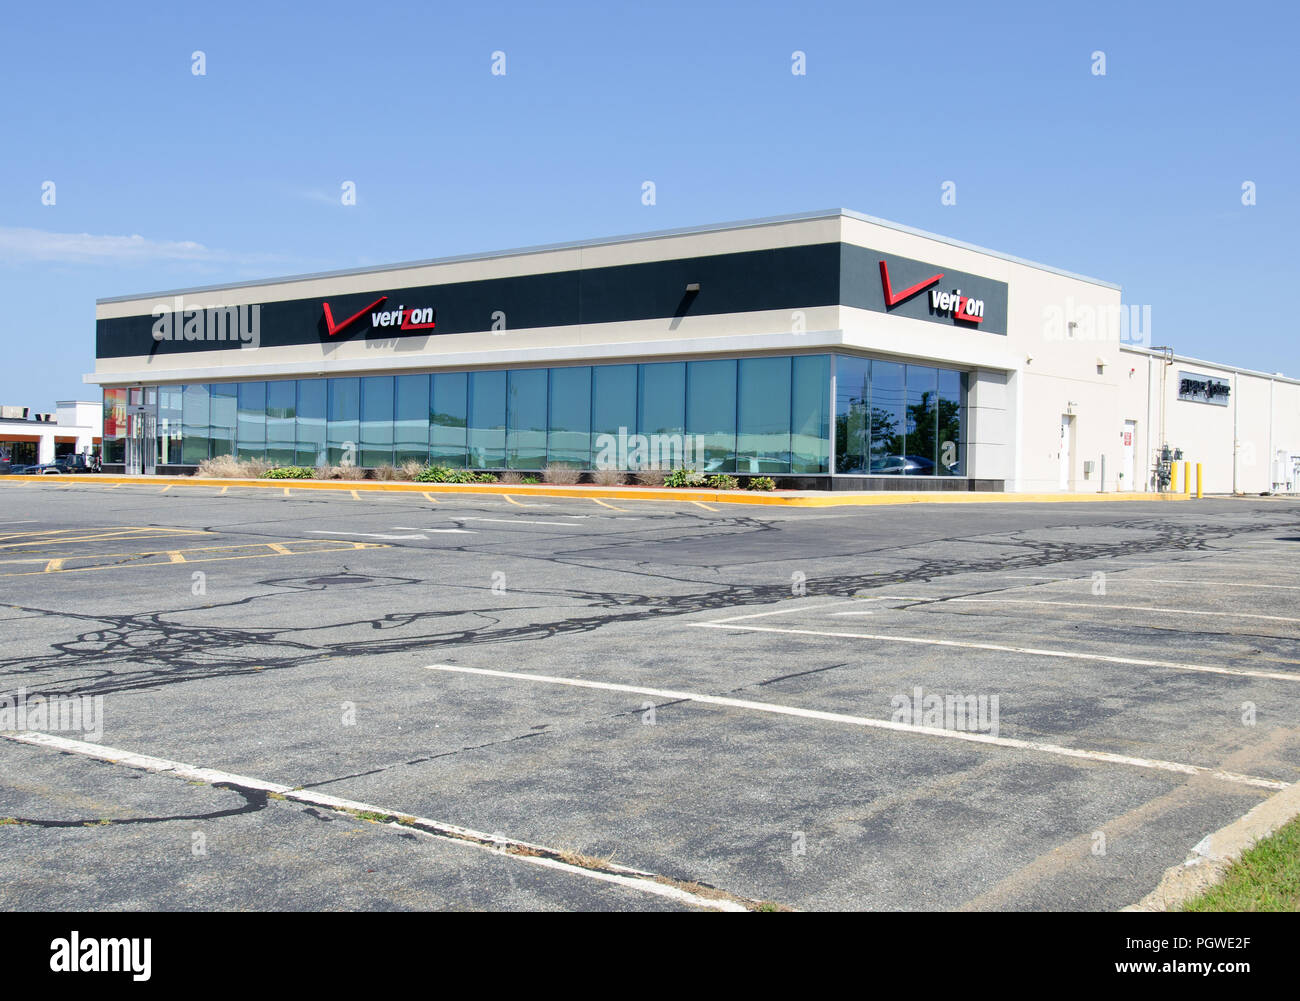 Verizon phone store in Hyannis, Massachusetts USA Stock Photo